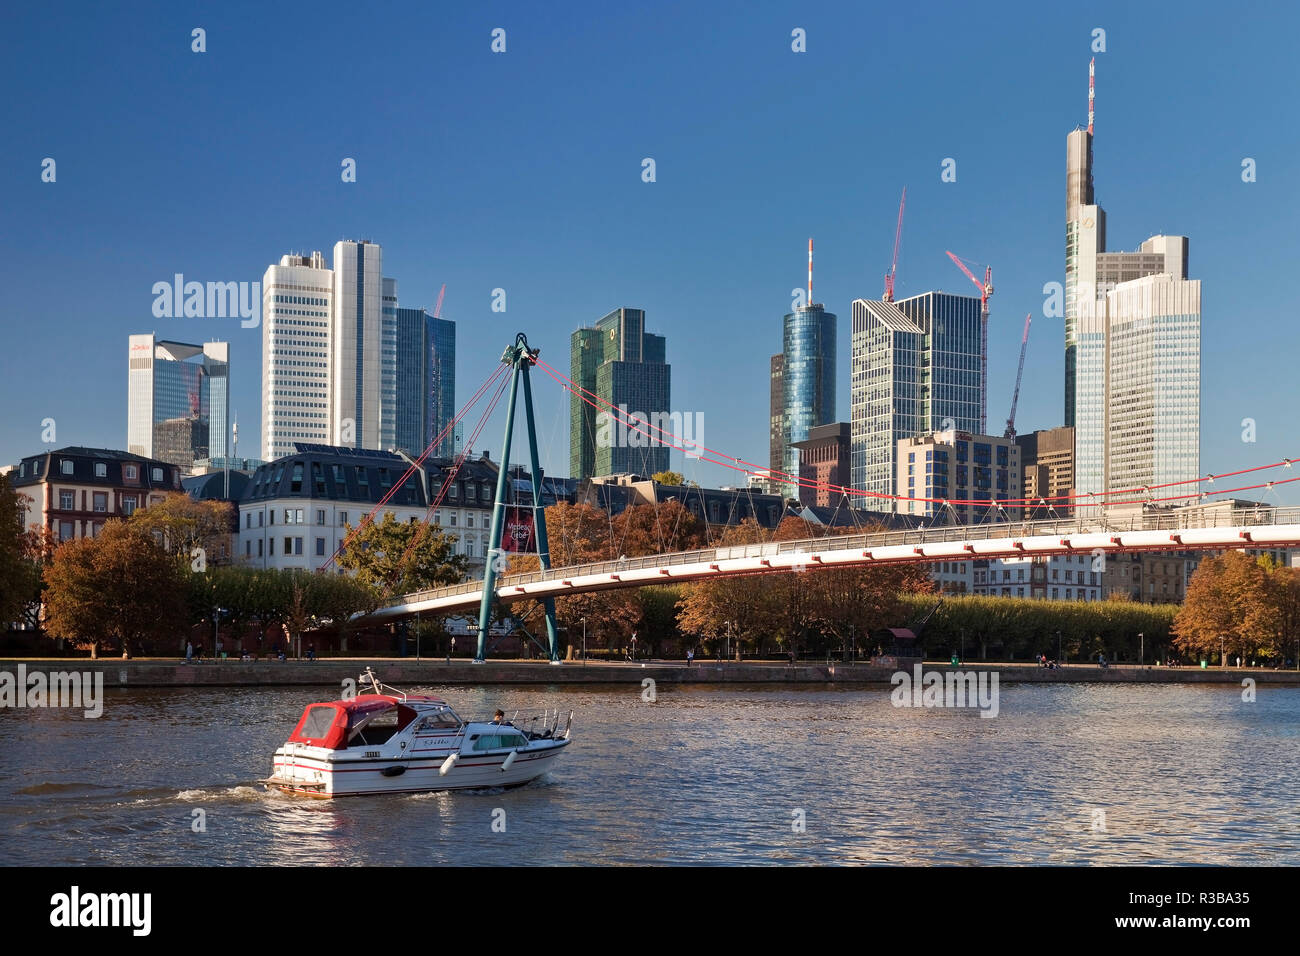 Vista de la ciudad con el ocio en bote sobre el río Main, Holbeinsteg y del distrito financiero, en el fondo, Frankfurt am Main, Hesse. Foto de stock